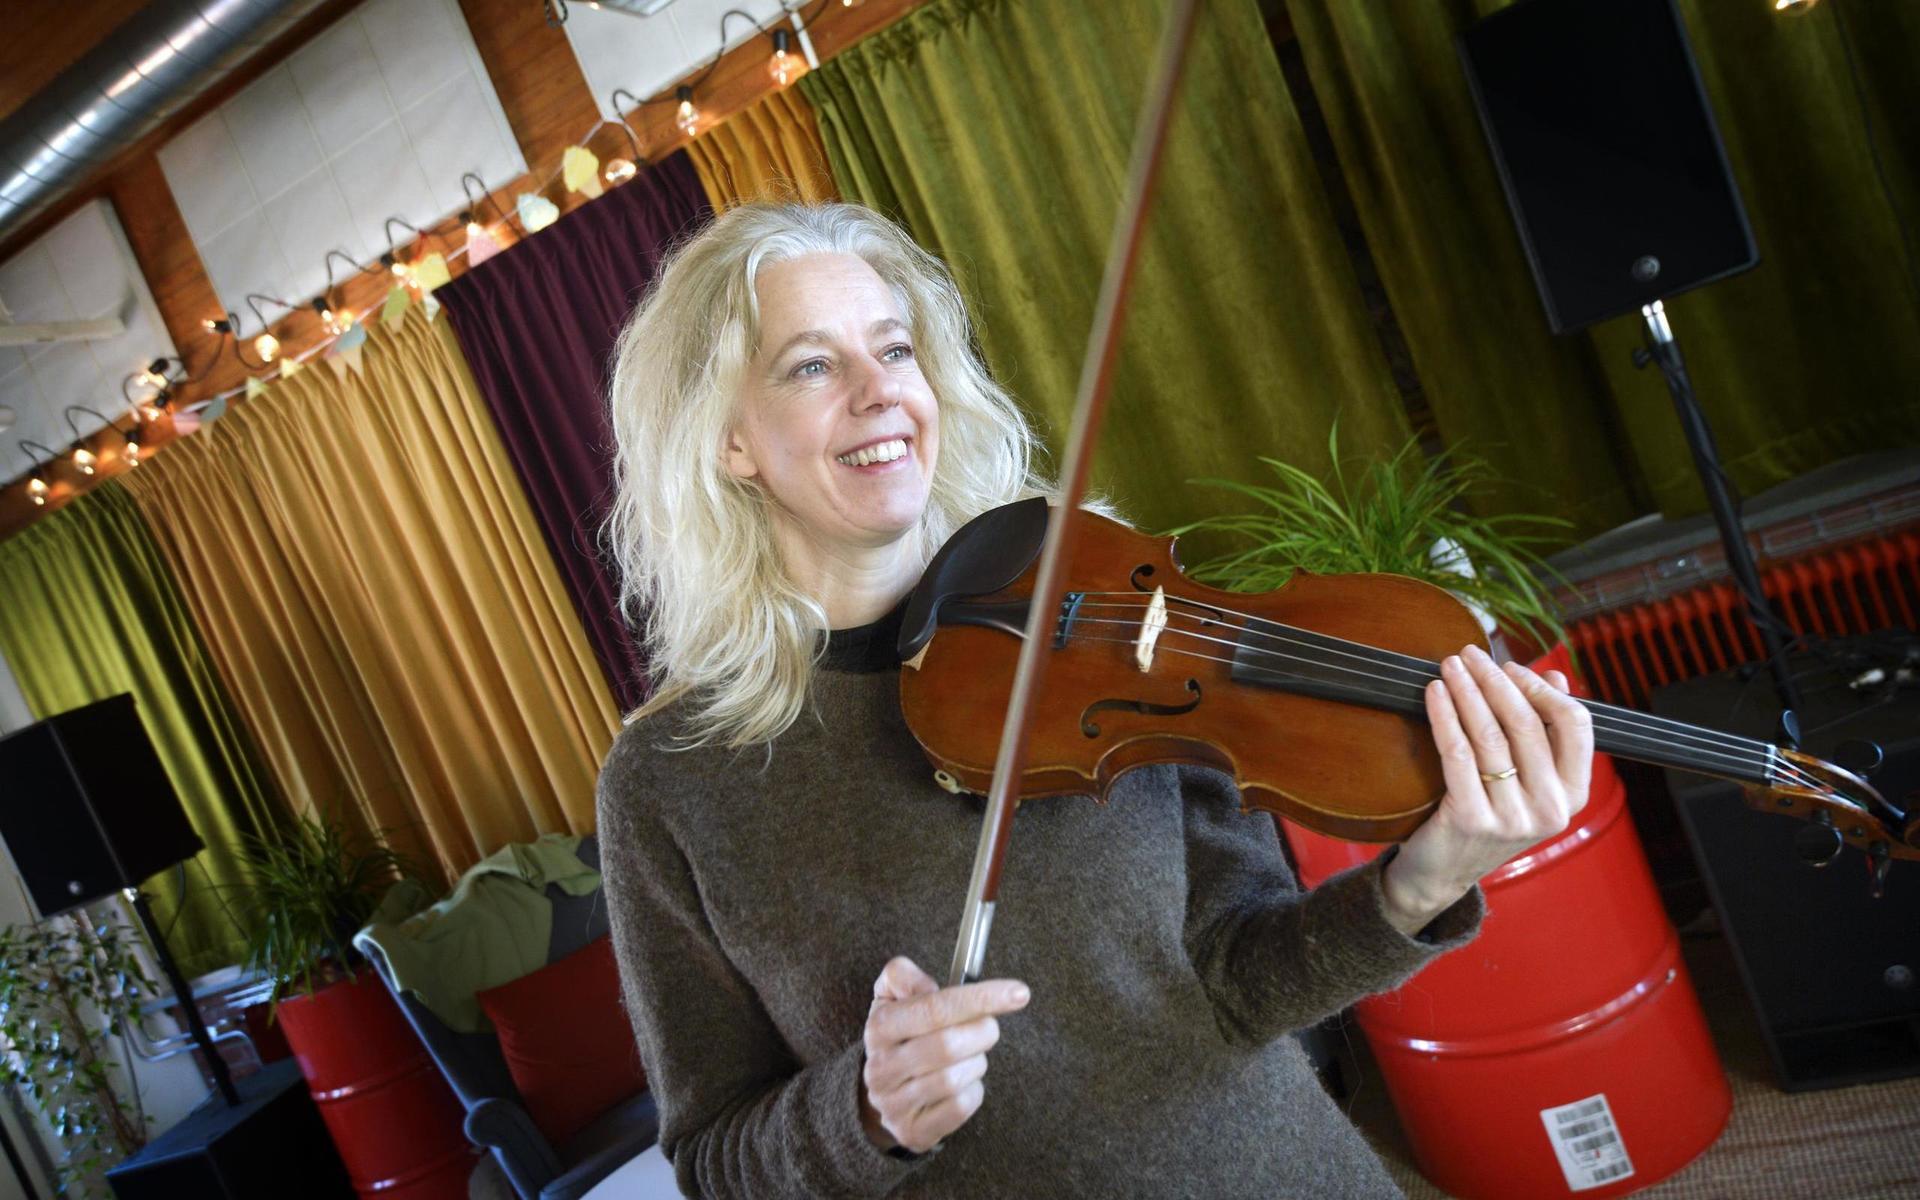 Sedan 2005 är Anette Wallin riksspelman, hon lever i musiken, är lärare på kulturskolan i Varberg, uppträder i olika sammanhang,  hon har gett ut en egen skiva med egna sånger och folkvisor och har tonsatt en mässa ”Vi öppnar våra hjärtan”  i folkton på uppdrag av Träslövs församling.